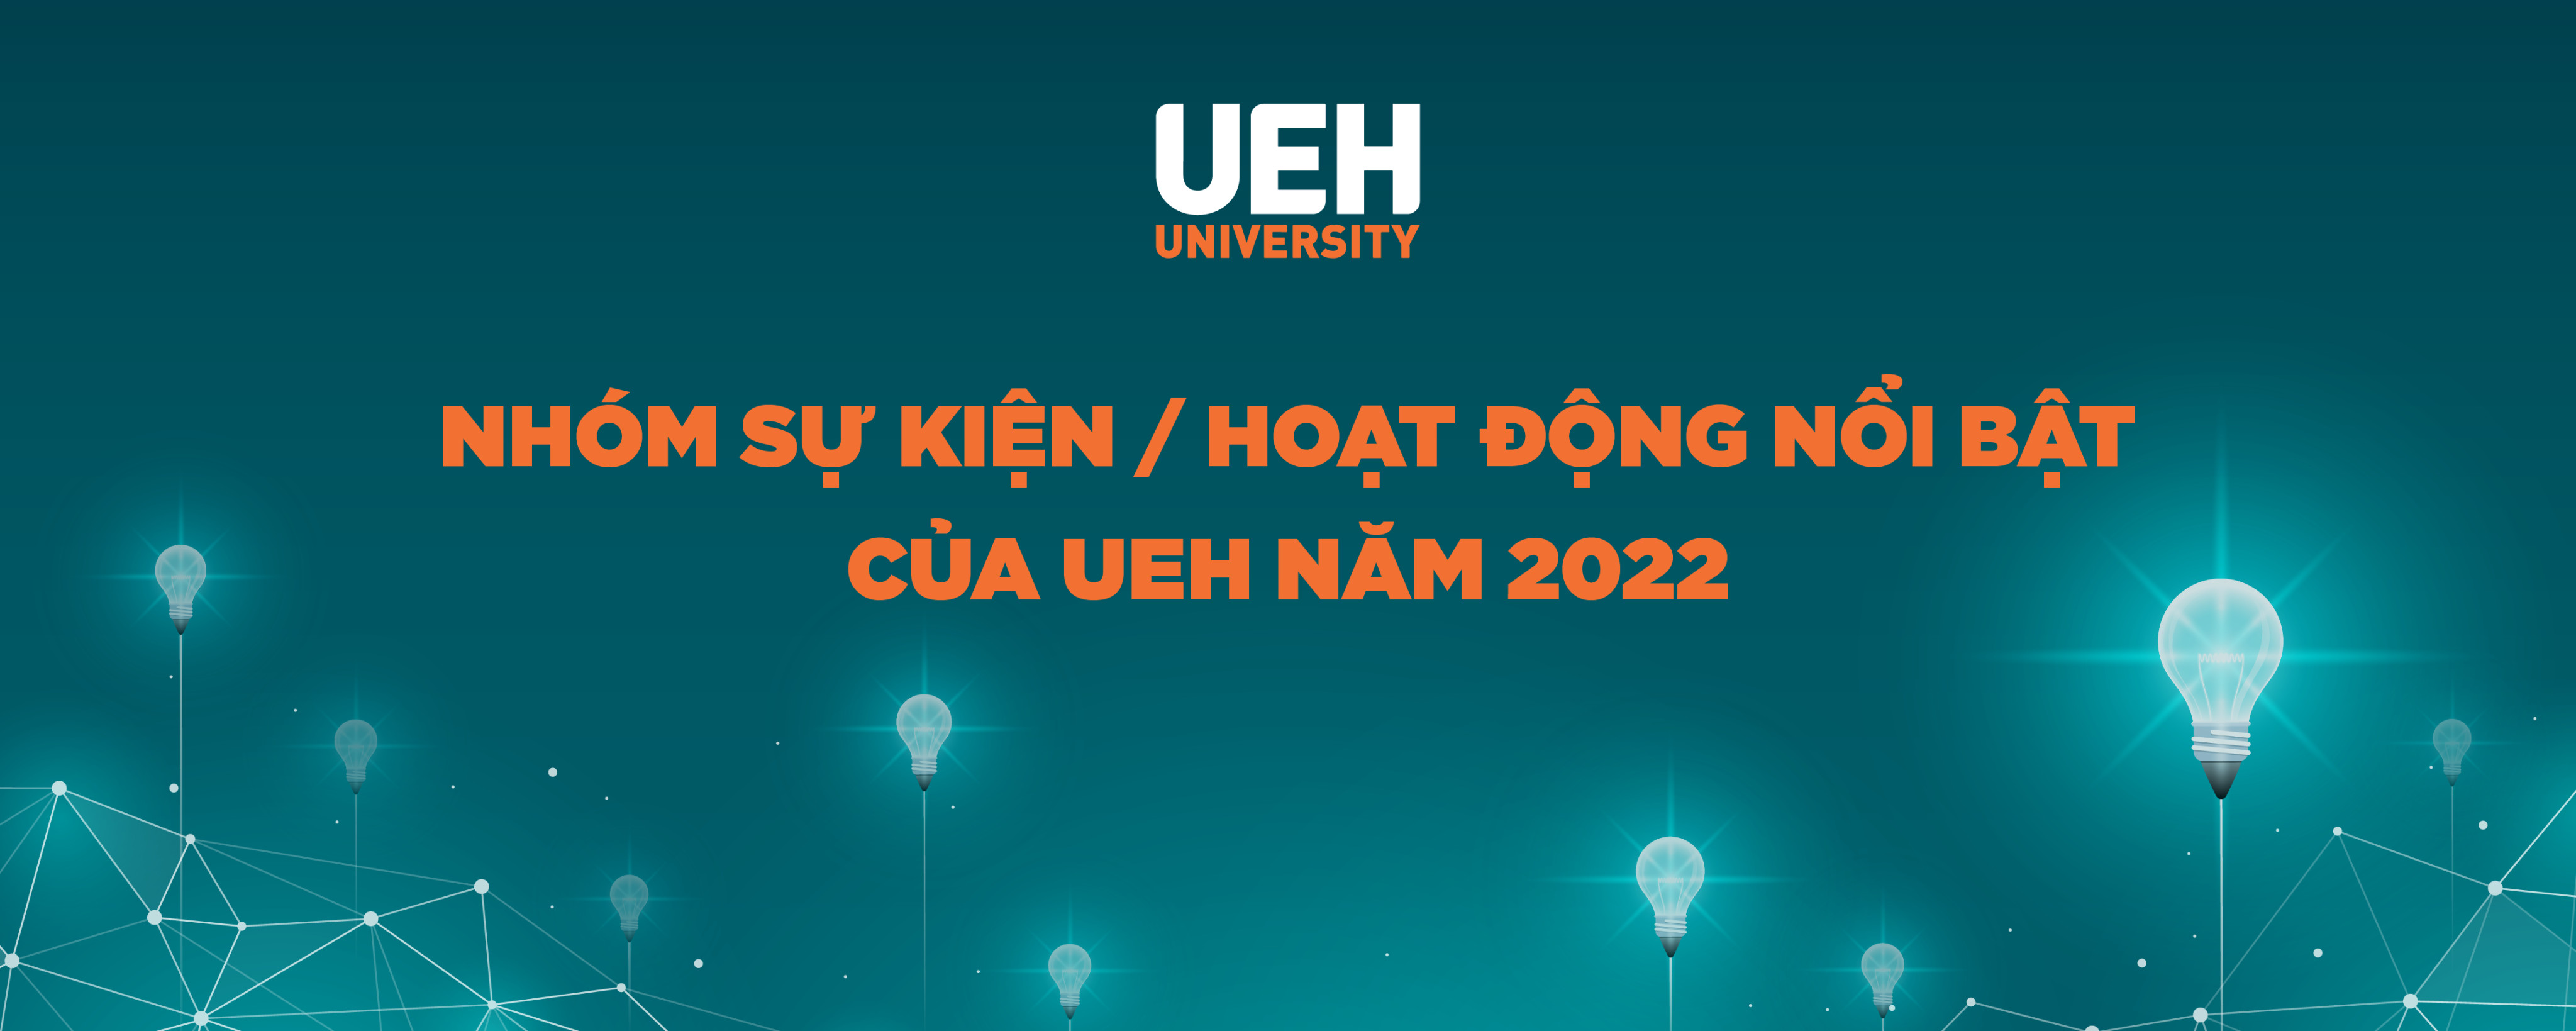 Outstanding activities/ events of UEH in 2022